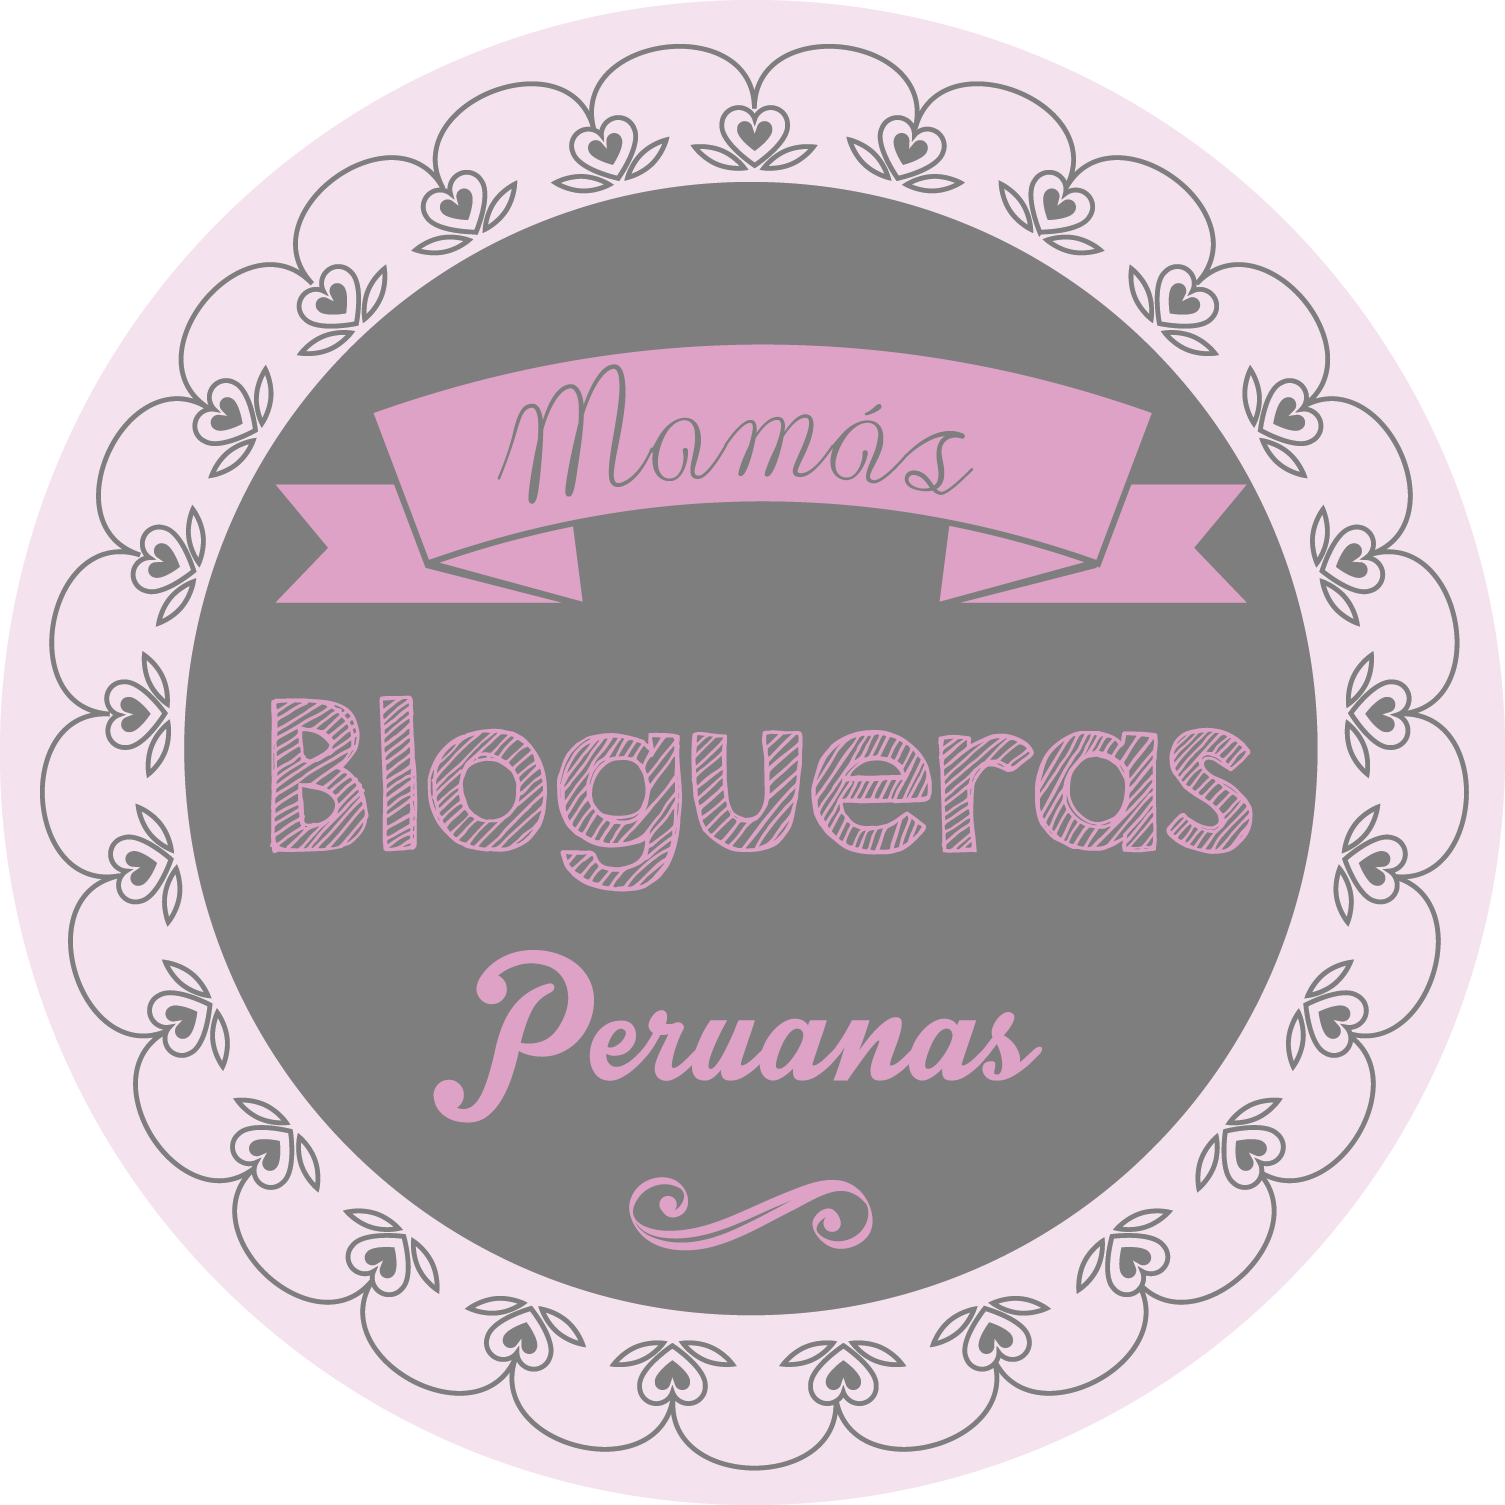 Este blog pertenece a la comunidad Mamás Blogueras Peruanas